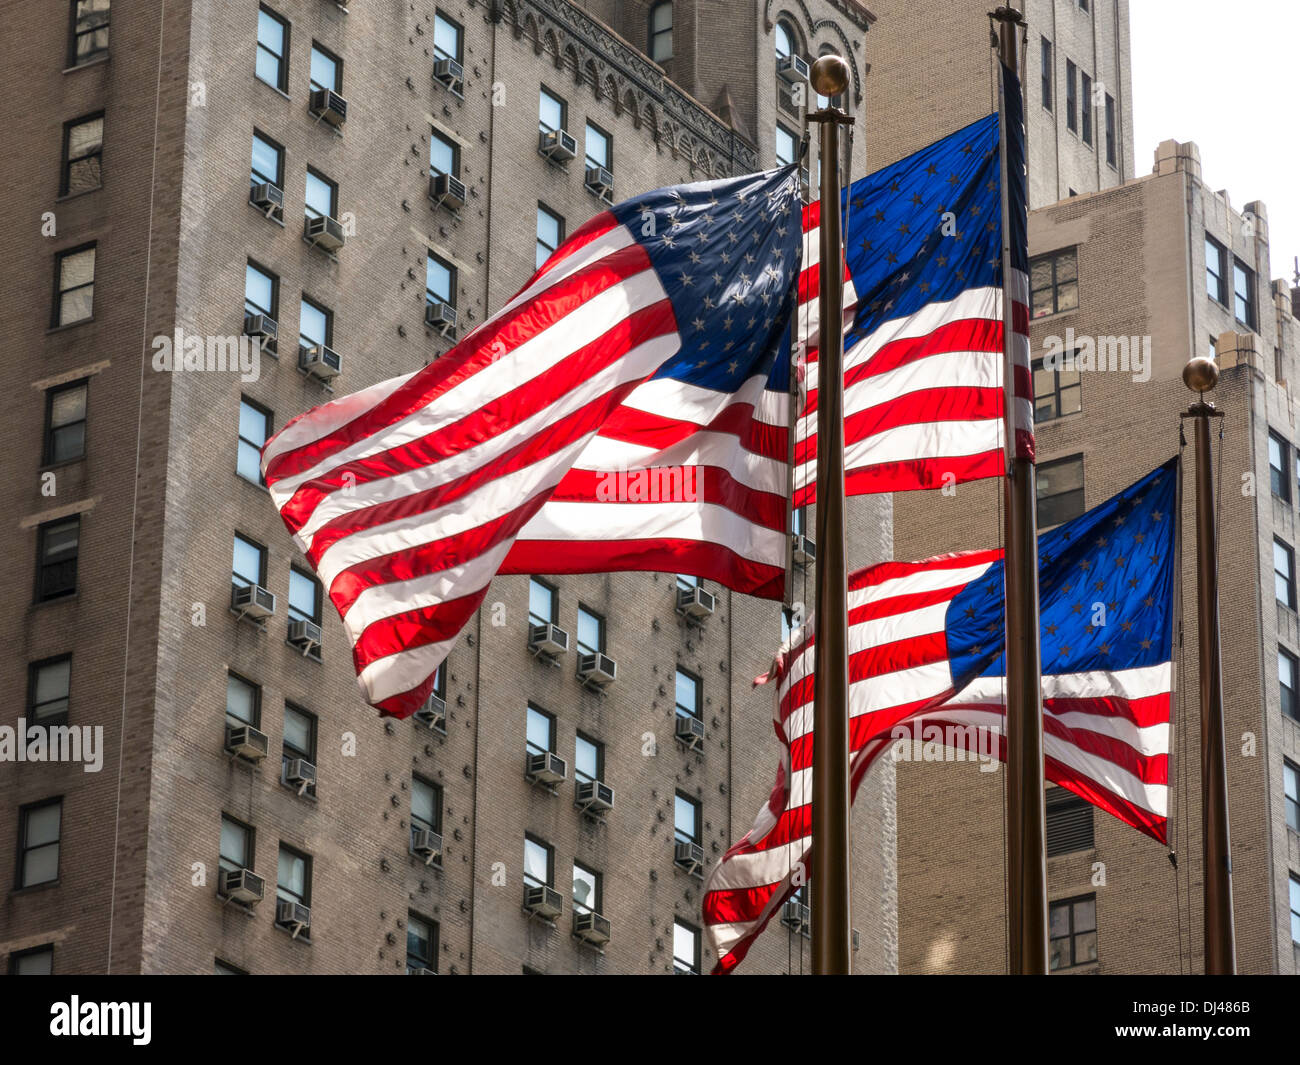 Des drapeaux américains sur la Septième Avenue, NYC Banque D'Images